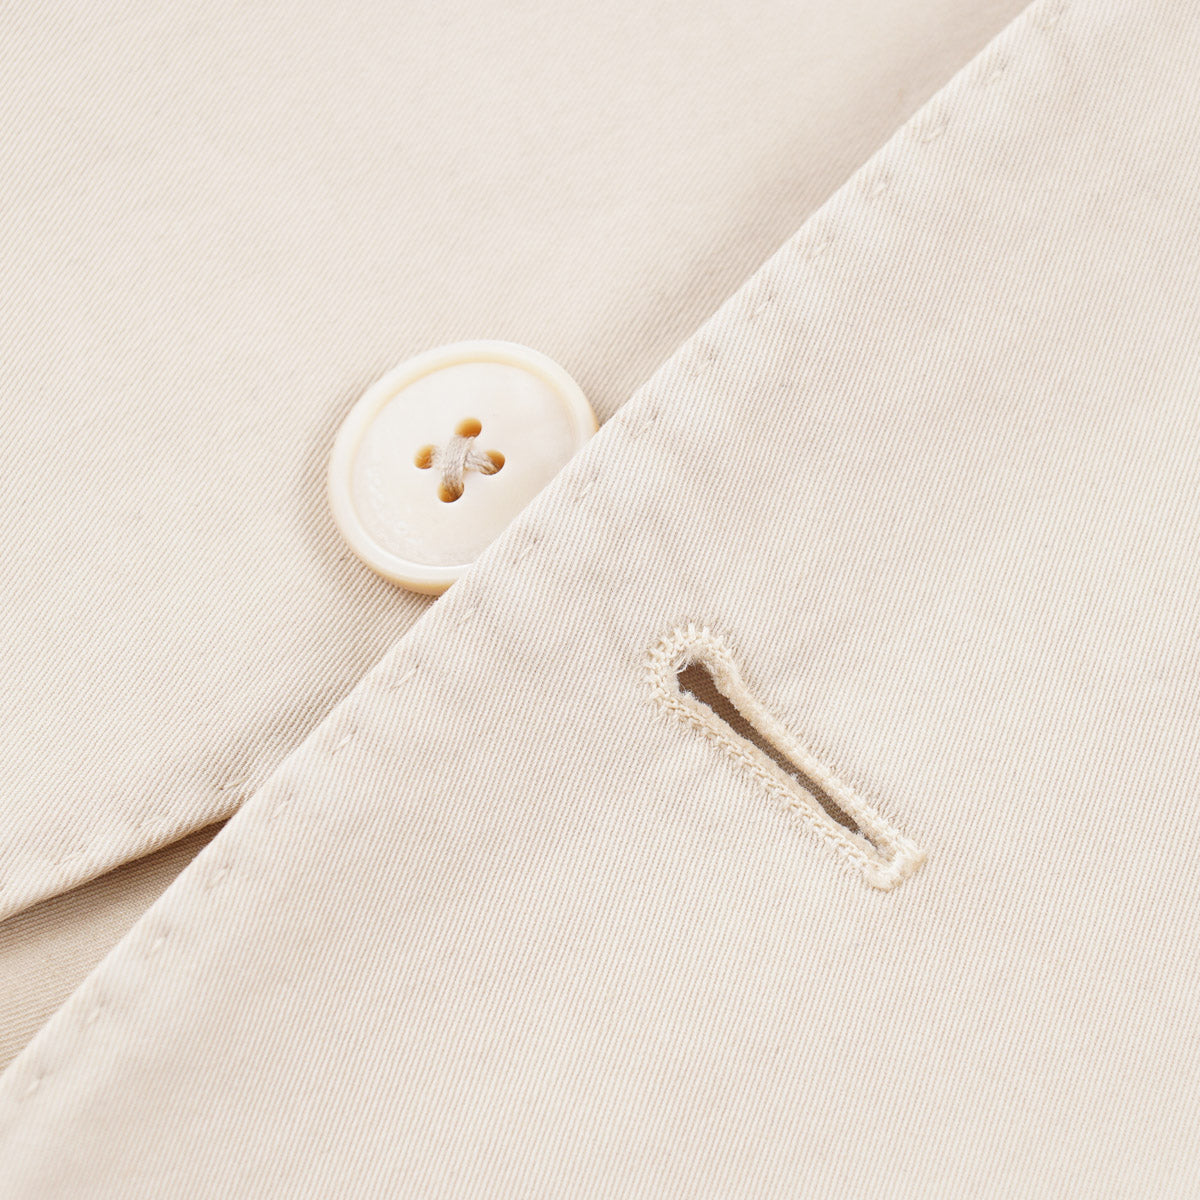 Boglioli Tan Cotton 'K Jacket' Suit - Top Shelf Apparel